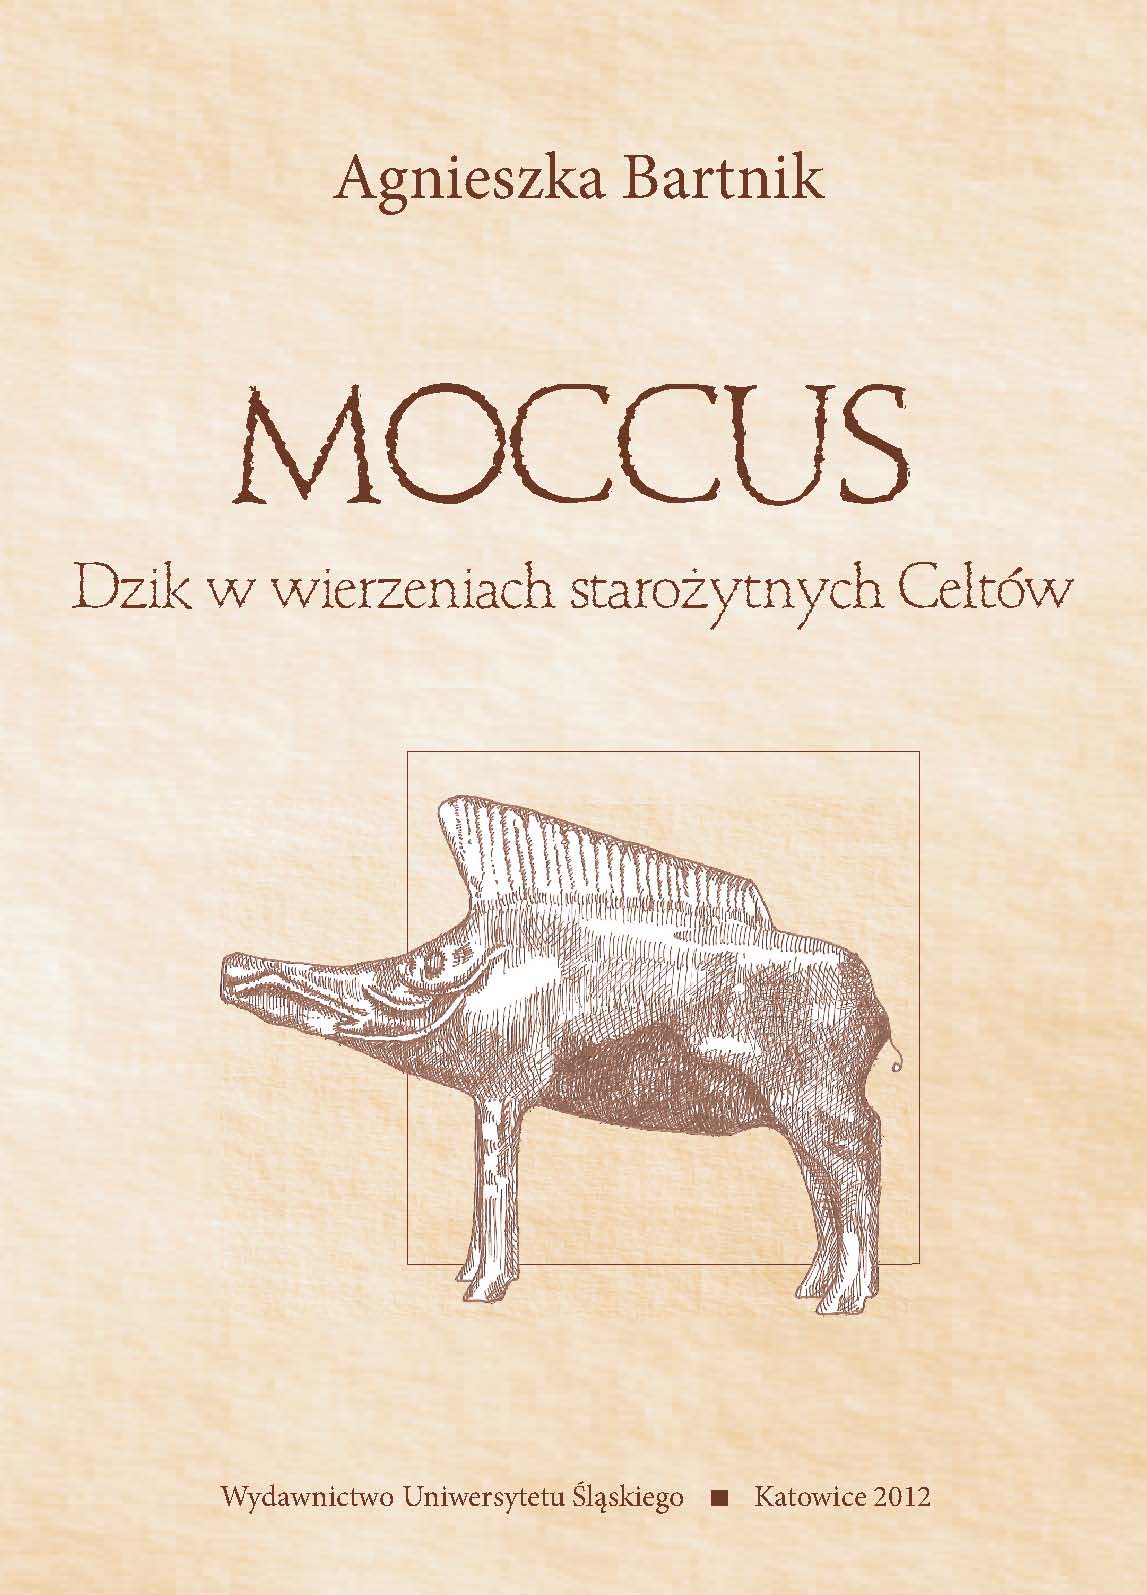 Moccus. A boar in Celt beliefs